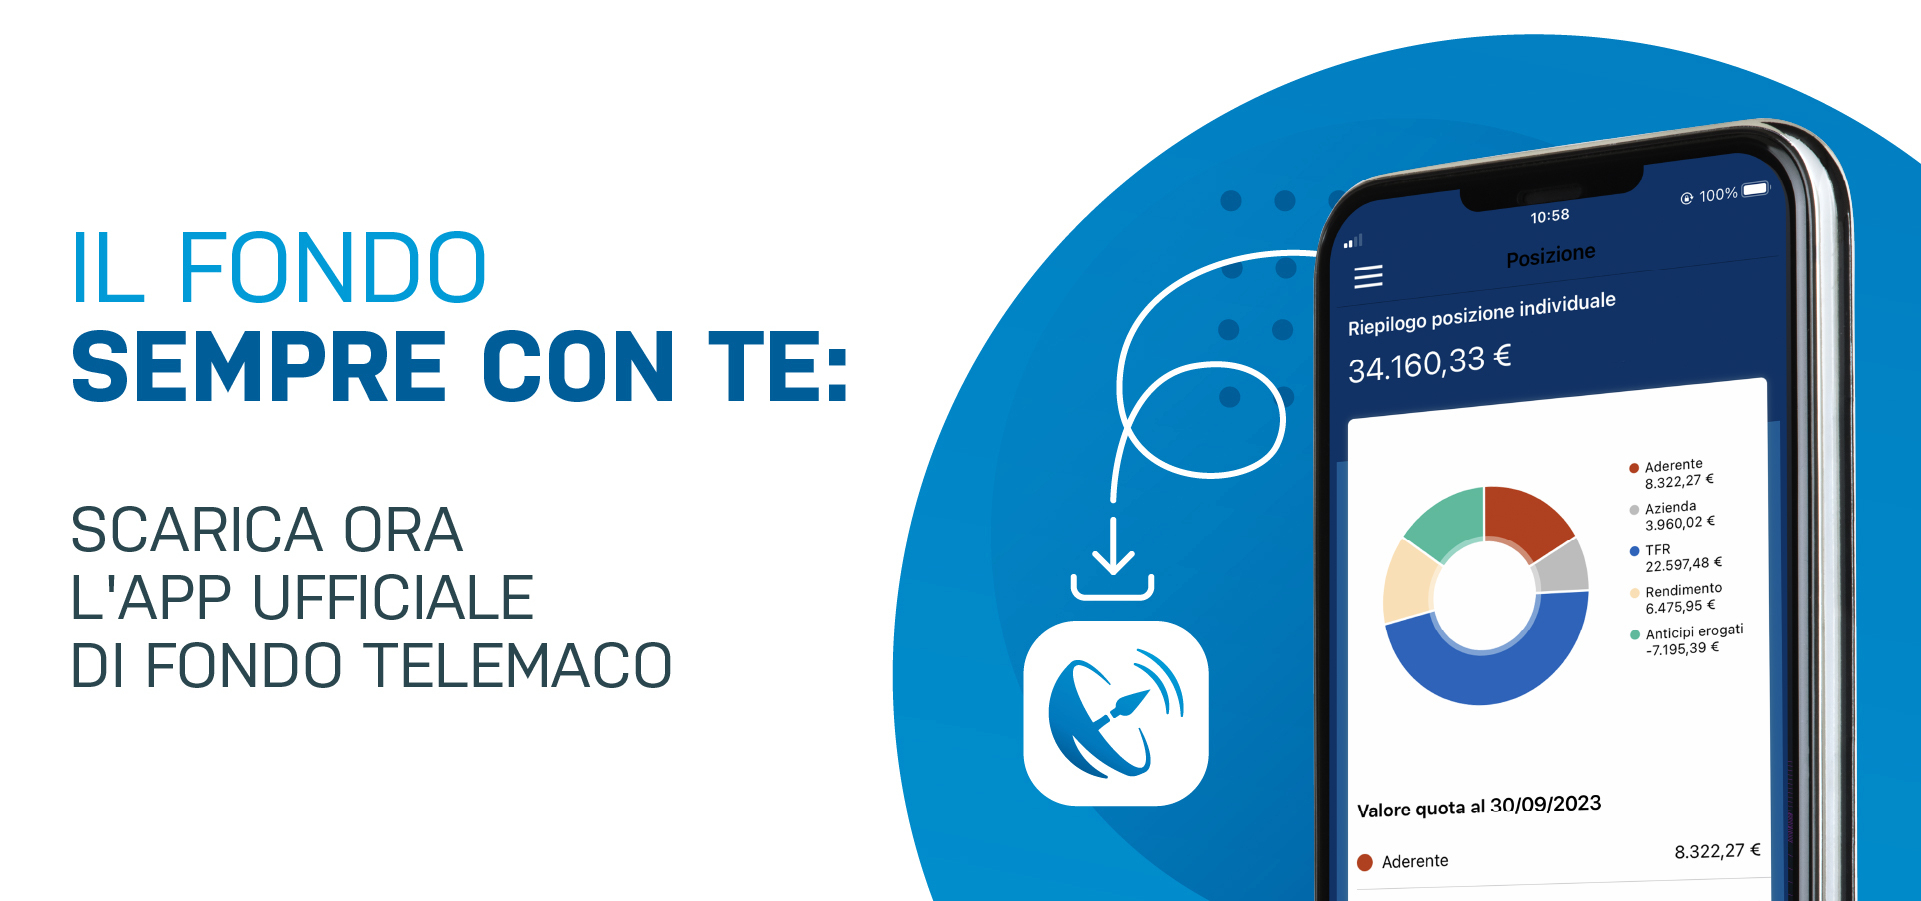 Gli iscritti possono scaricare gratuitamente l'App ufficiale di Fondo Telemaco, necessaria per autorizzare le operazioni in Area Riservata.